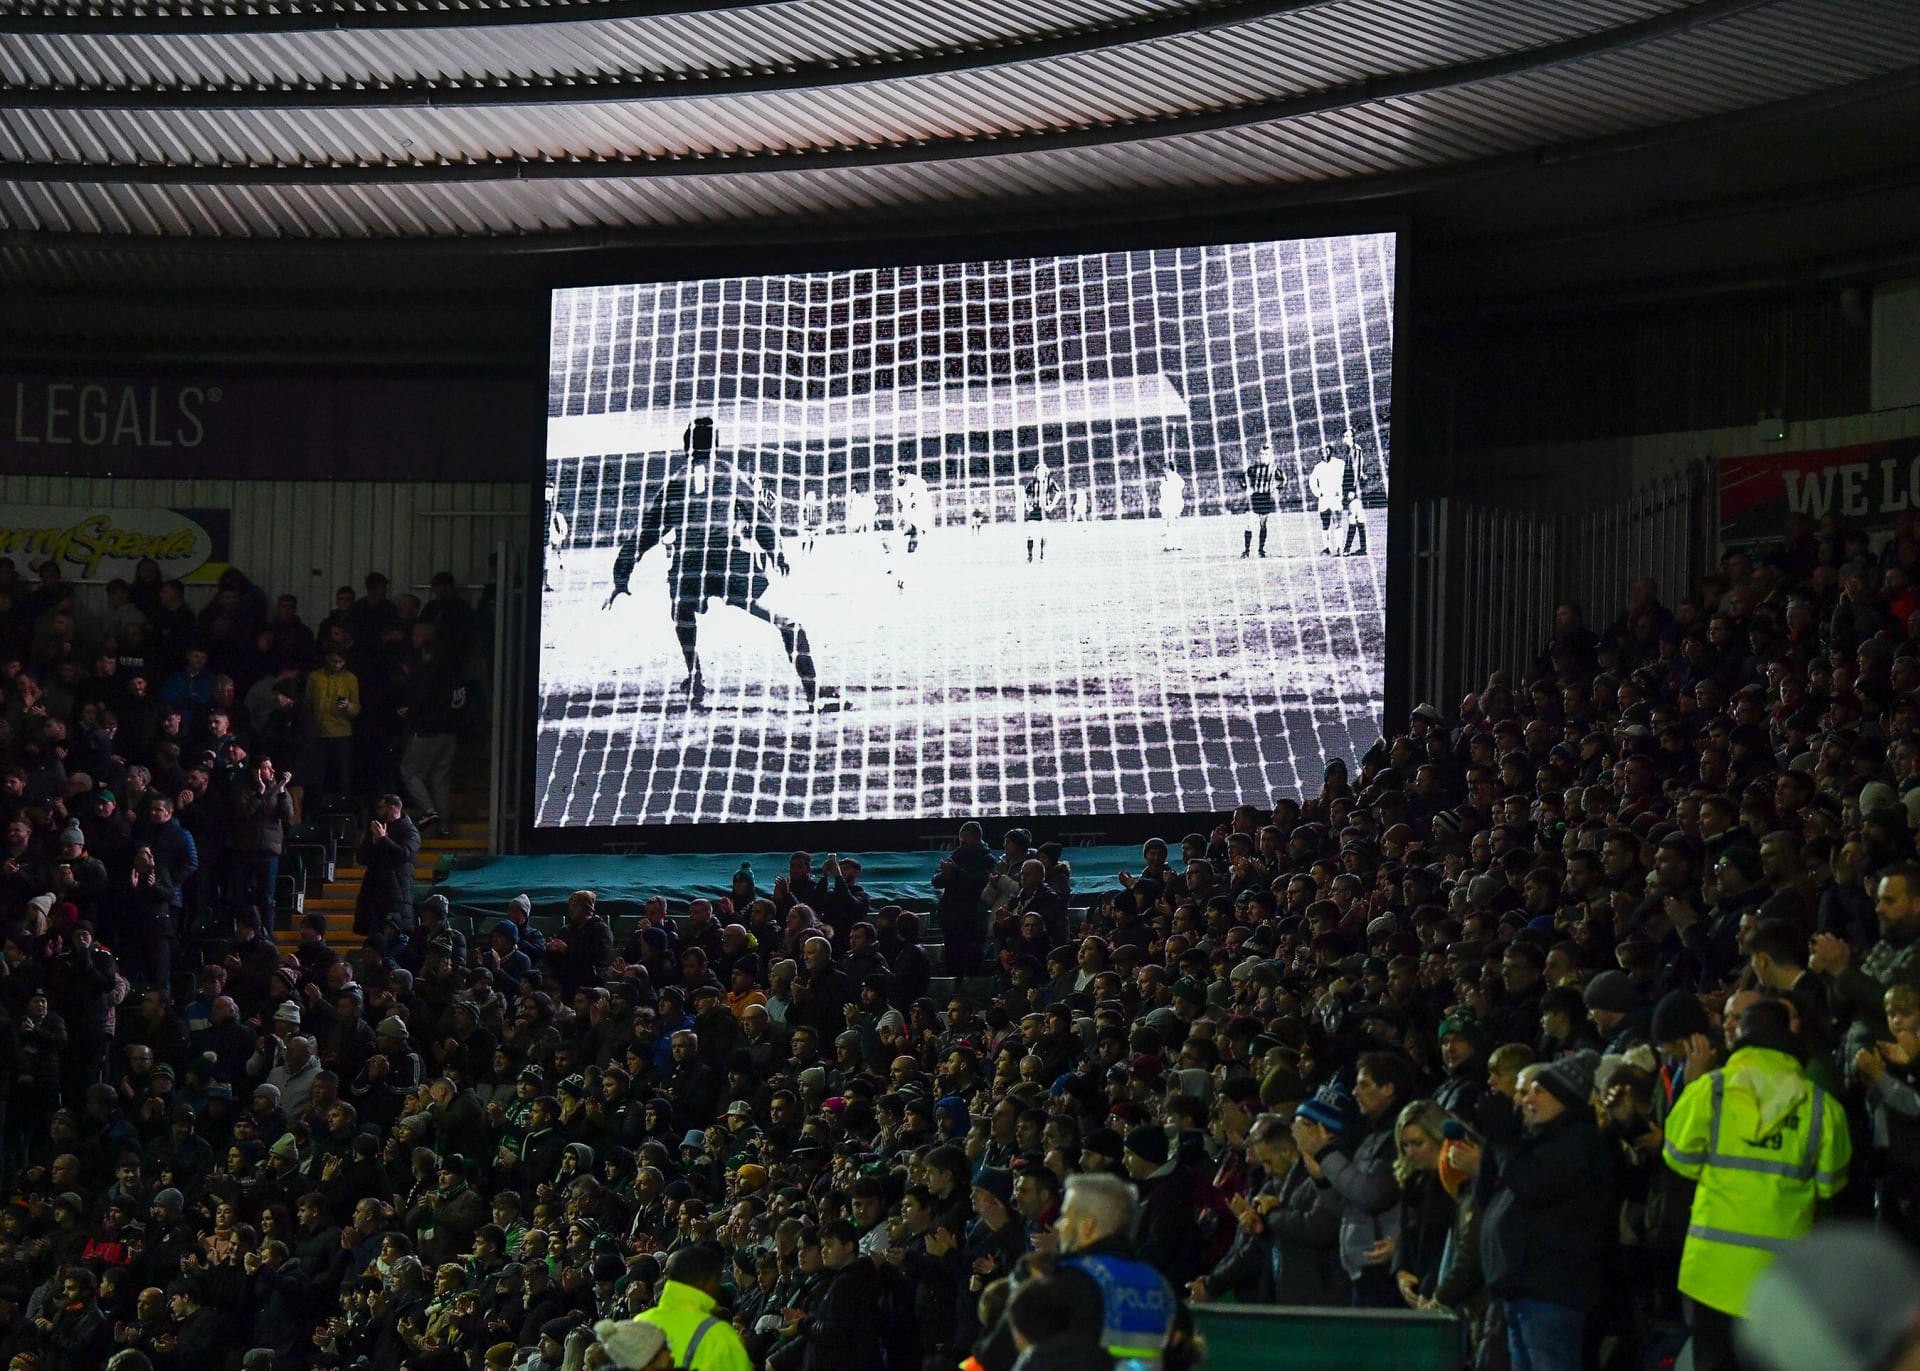 Pelému aplaudovali i fanoušci v Anglii při zápase třetí nejvyšší soutěže mezi Plymouthem a Wycombe.